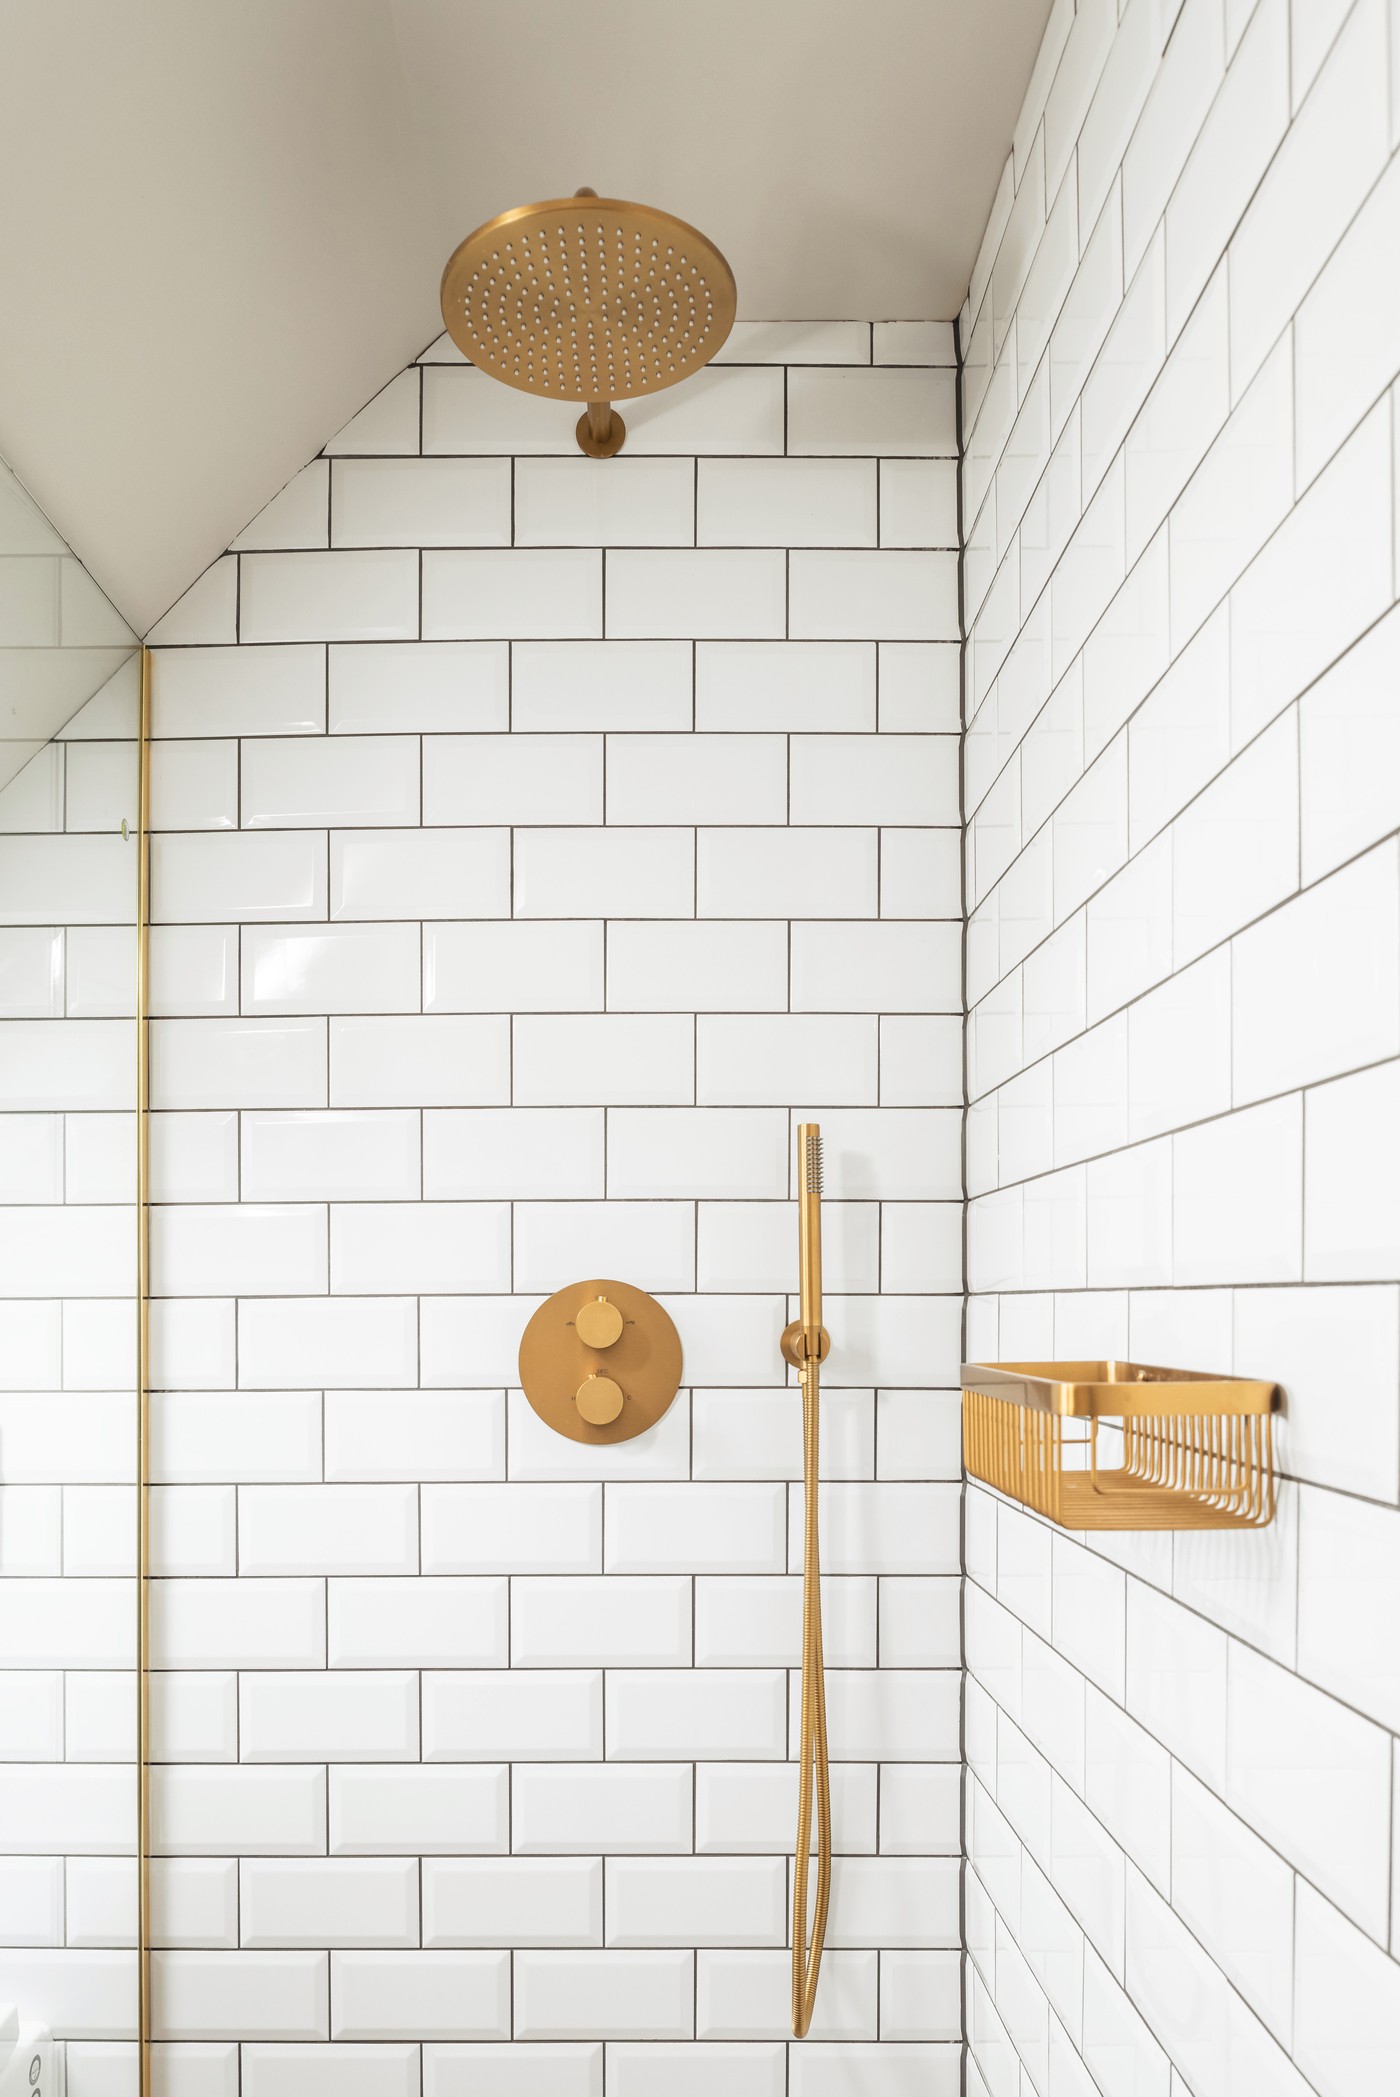 Décor do dia: banheiro pequeno tem subway tiles e detalhes dourados (Foto: Maciek Platek)